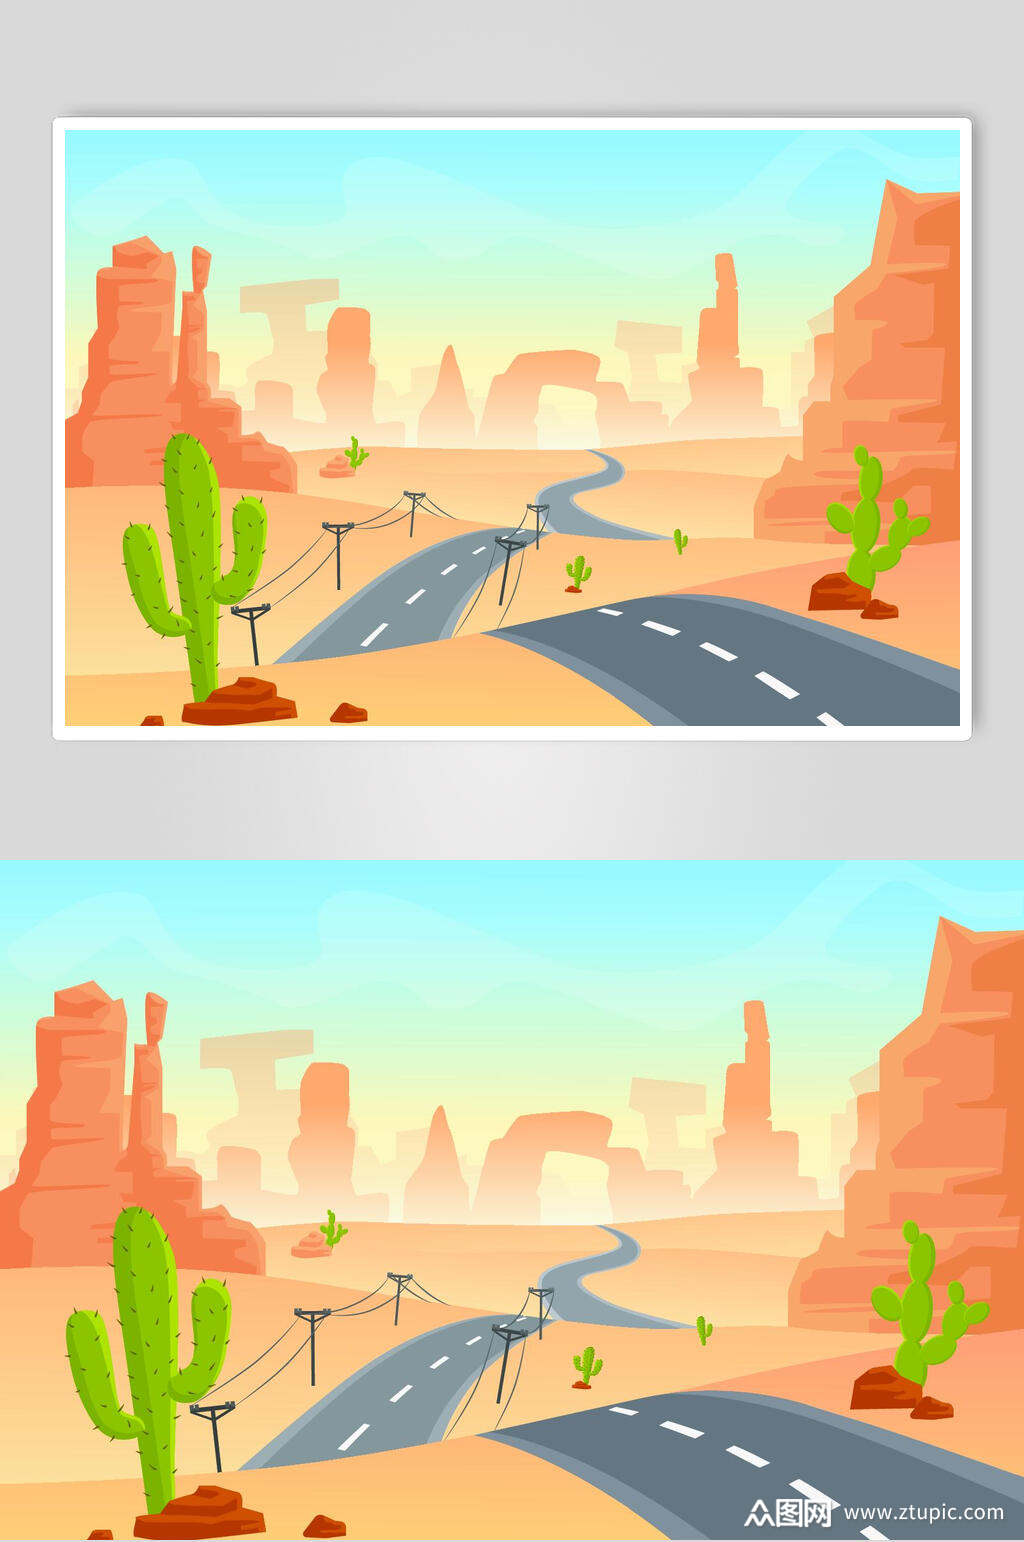 沙漠公路插画设计素材素材,本作品是由小李上传的原创平面